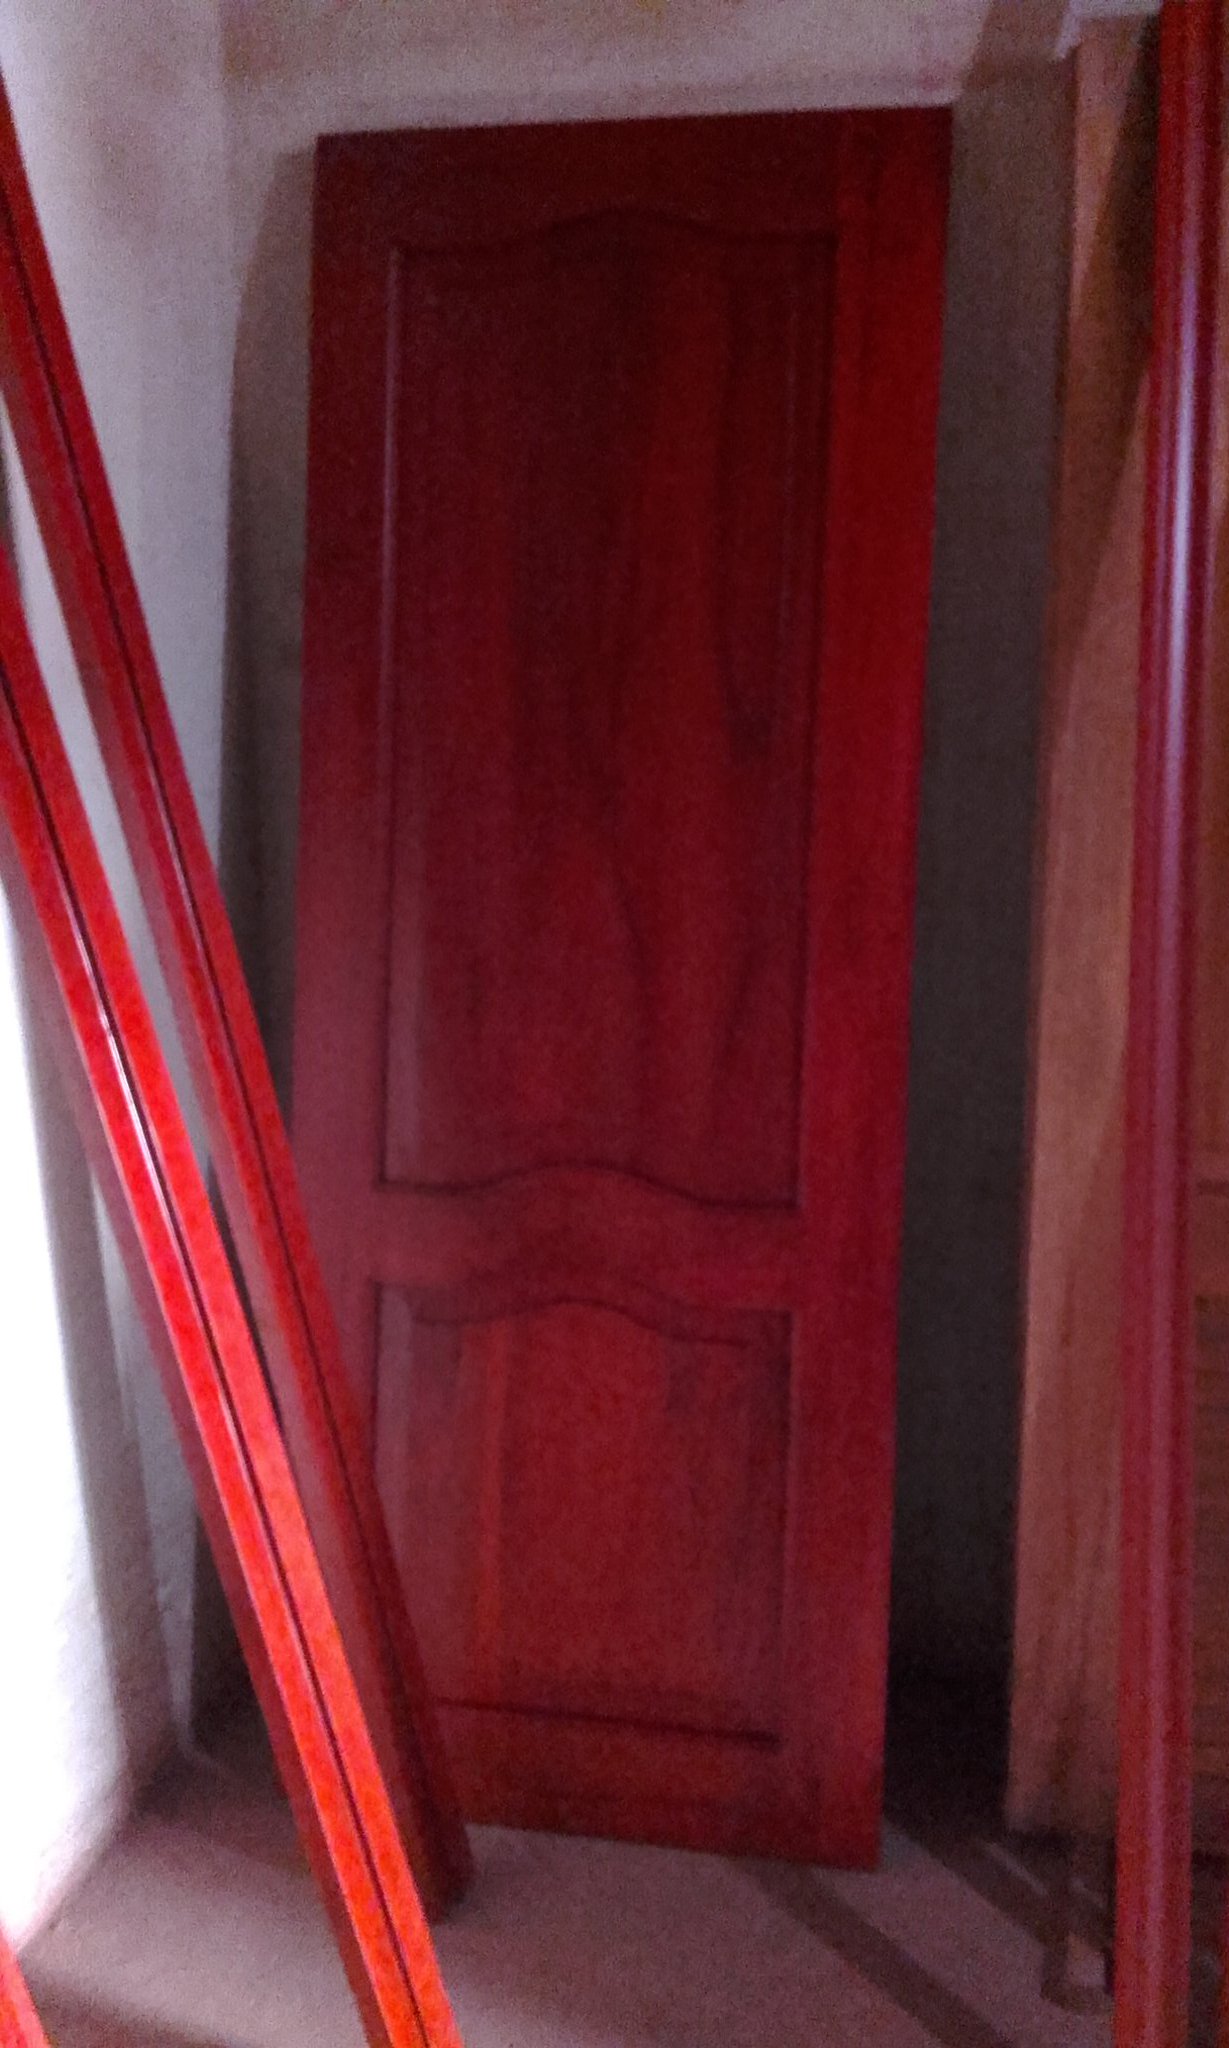 El Puertazo pe Twitter: „Puerta en madera, laqueada a soplete con tinte en  rojo inglés #calidad #decoracion #hogar #excelente #trabajo  https://t.co/QCOmC29jlh” / Twitter